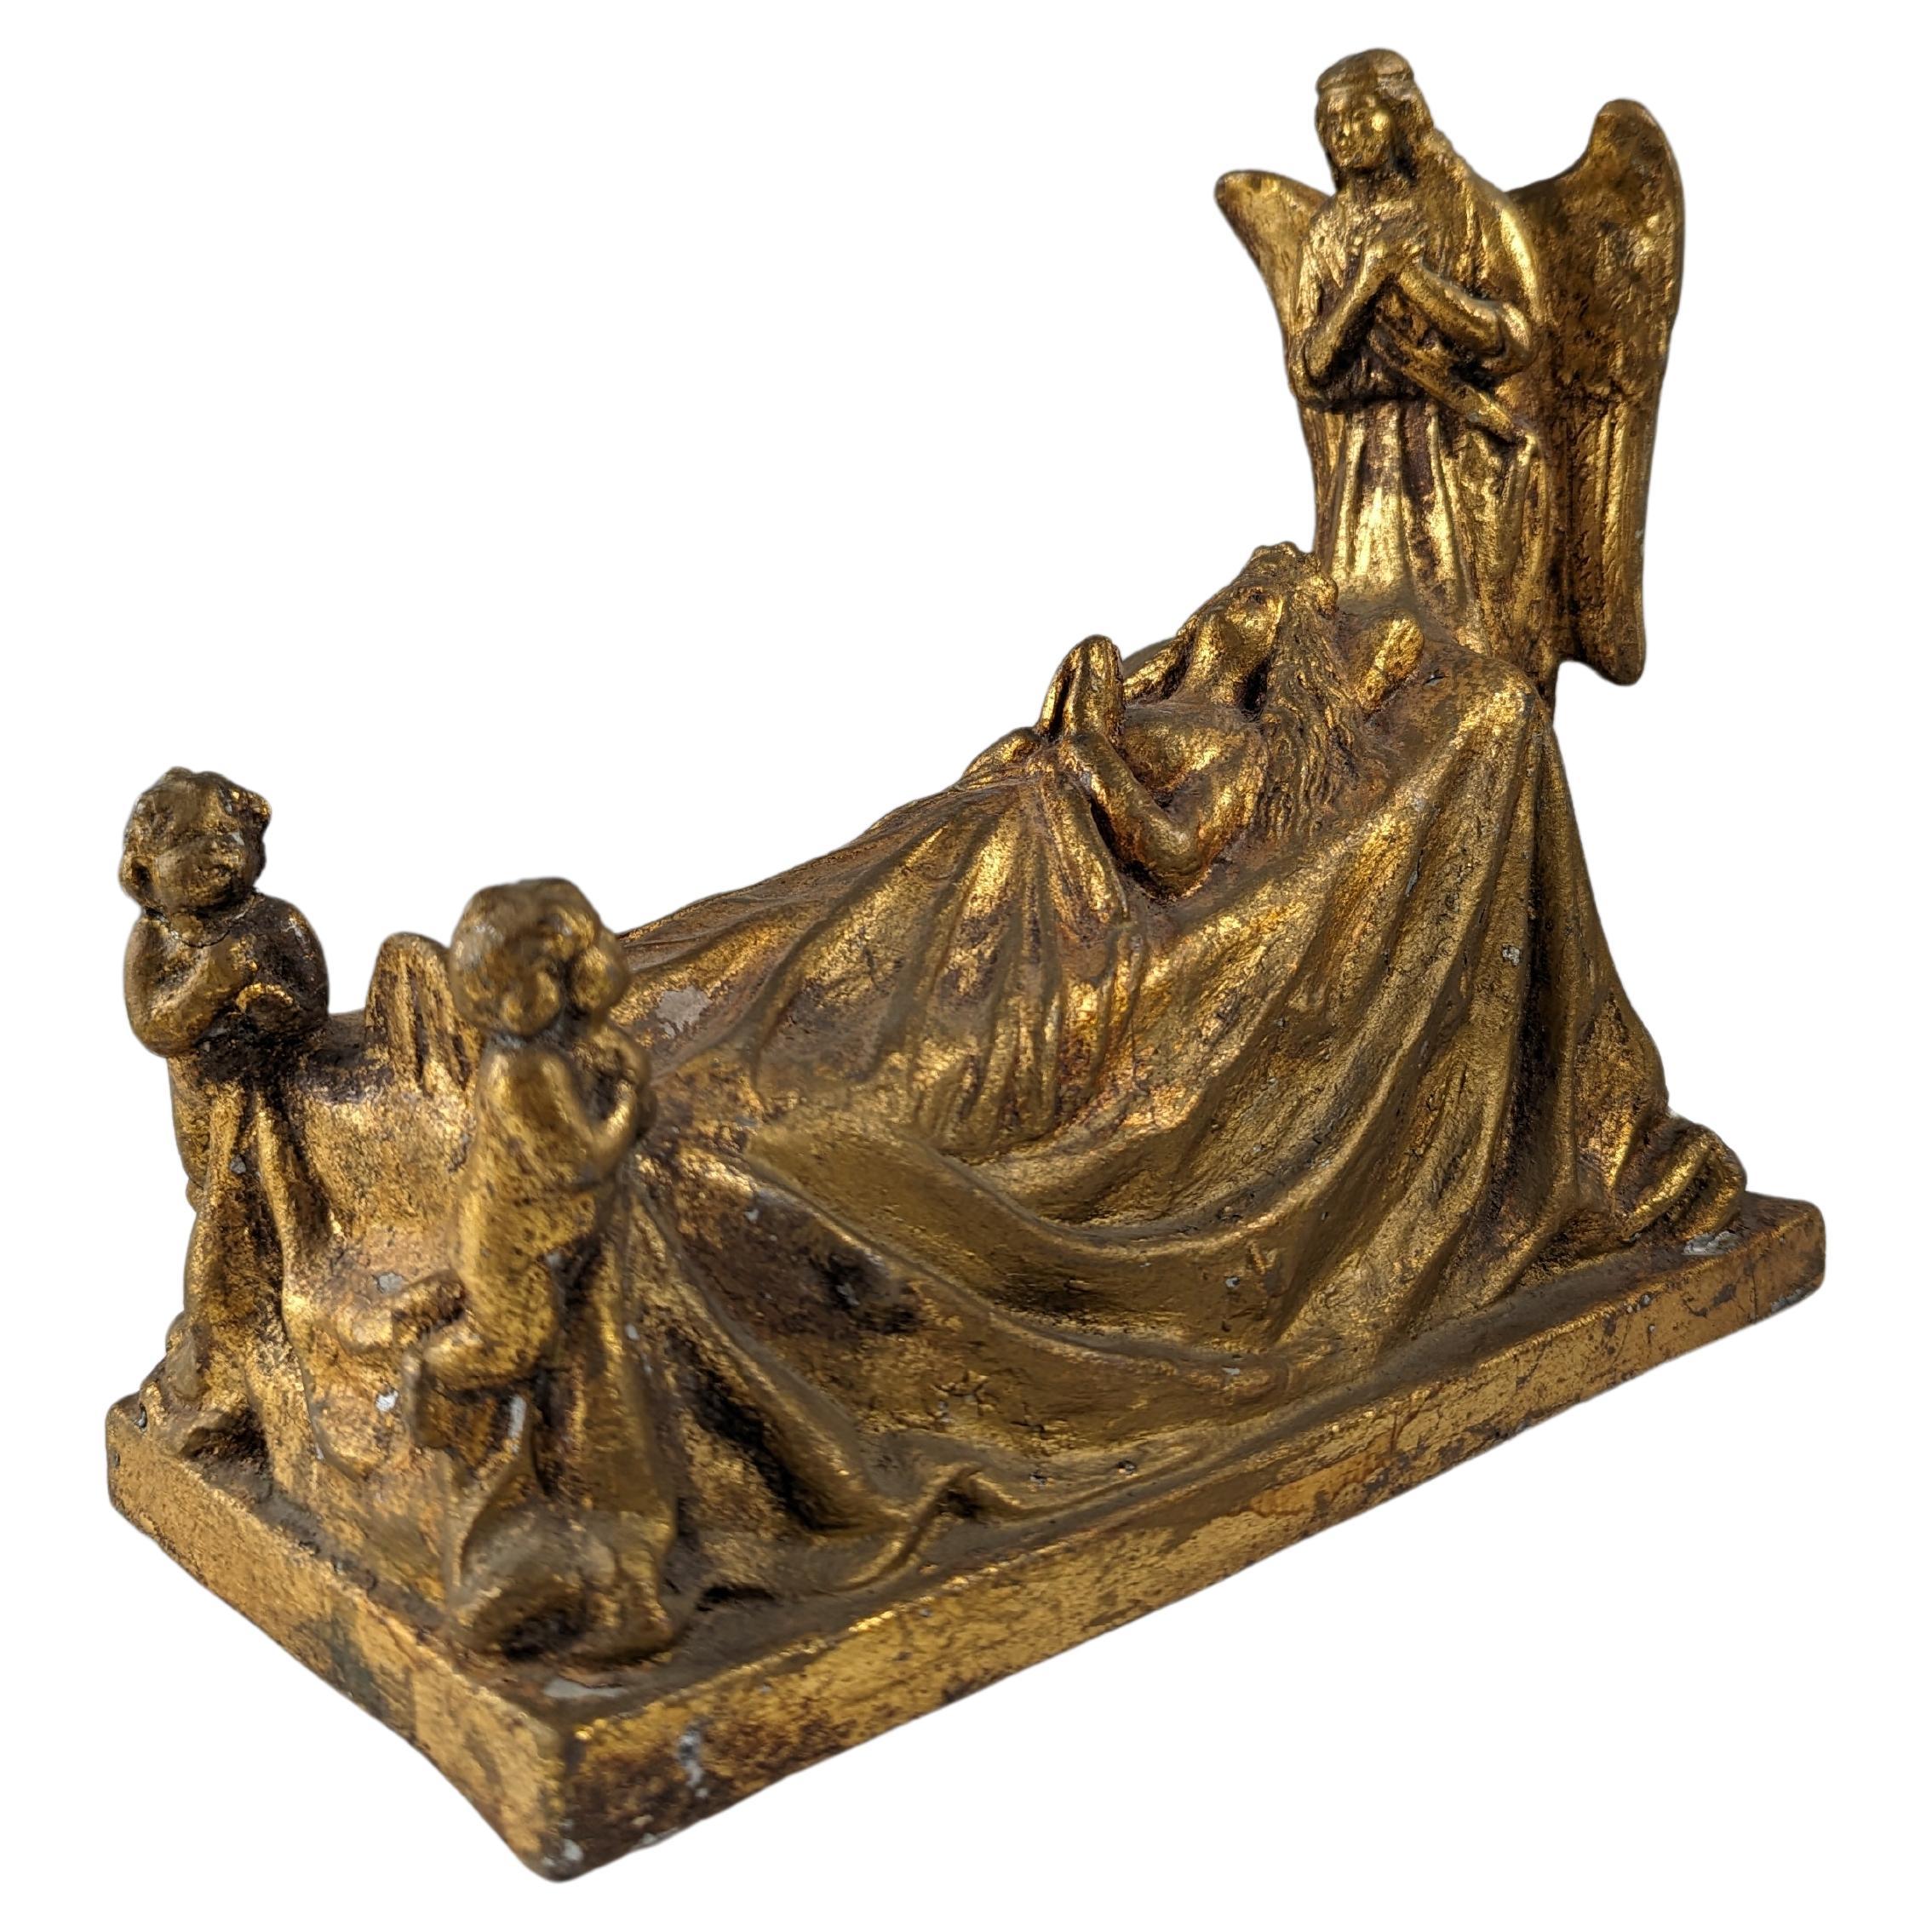 Queen and Angels sculpture in golden terracotta